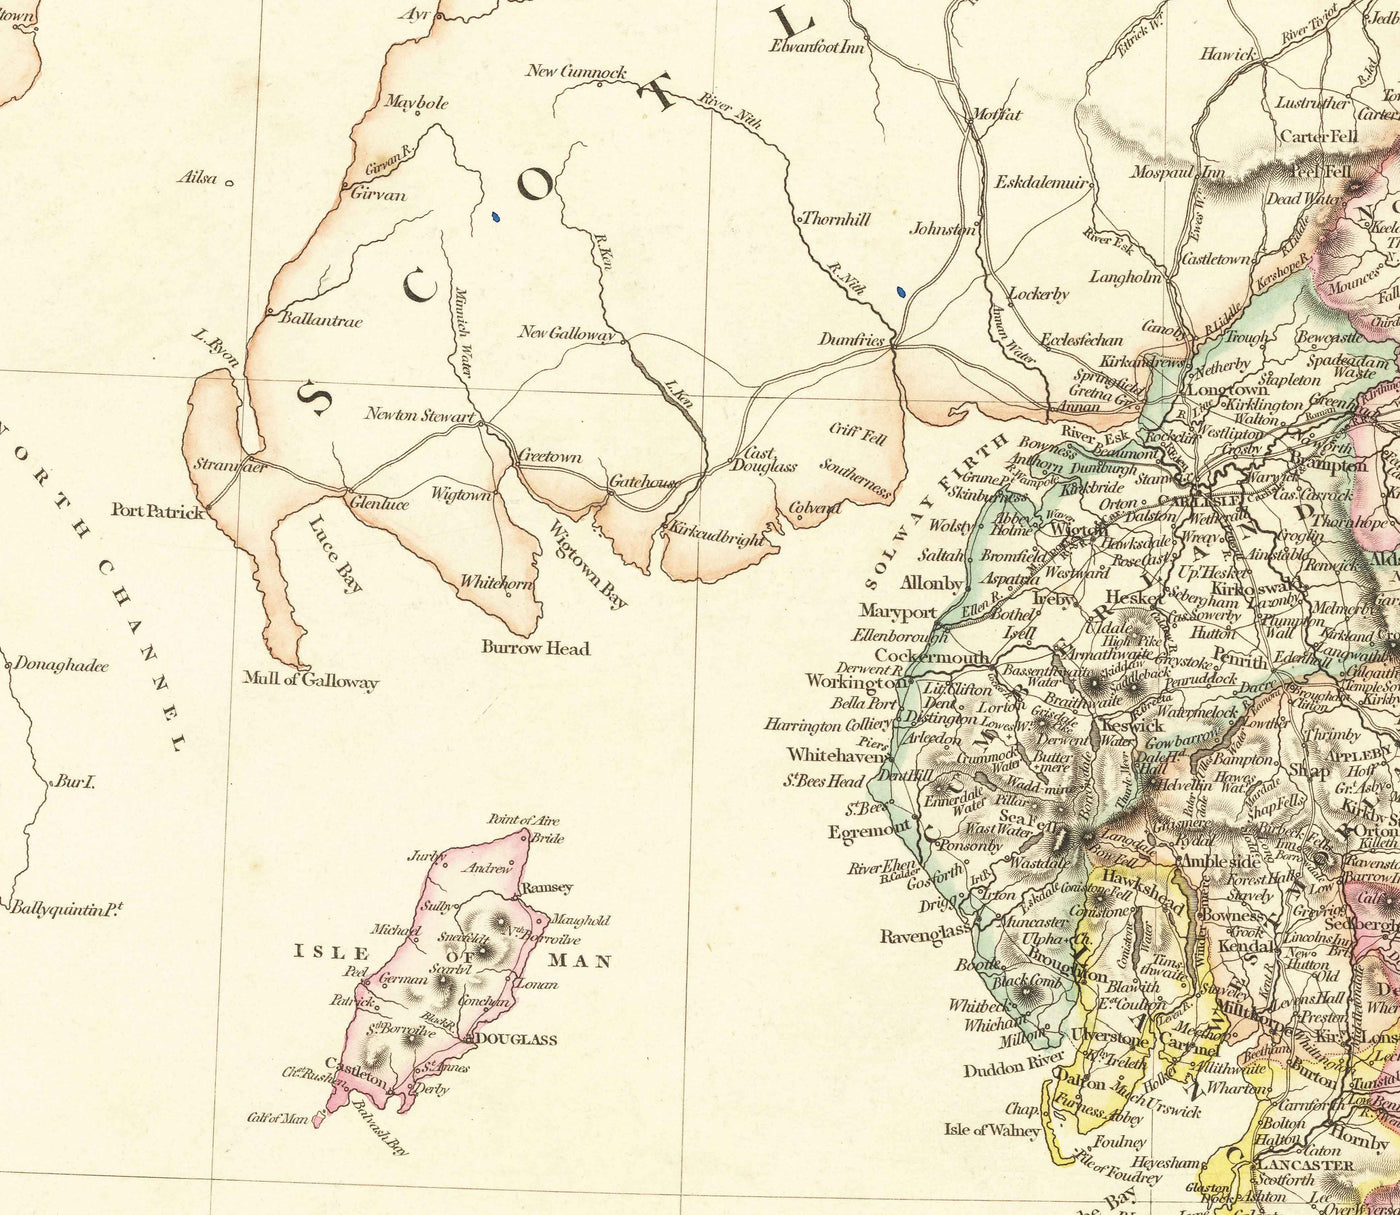 Antiguo mapa de Inglaterra y Gales en 1832 por John Arrowsmith - Ciudades, condados, carreteras, ferrocarril